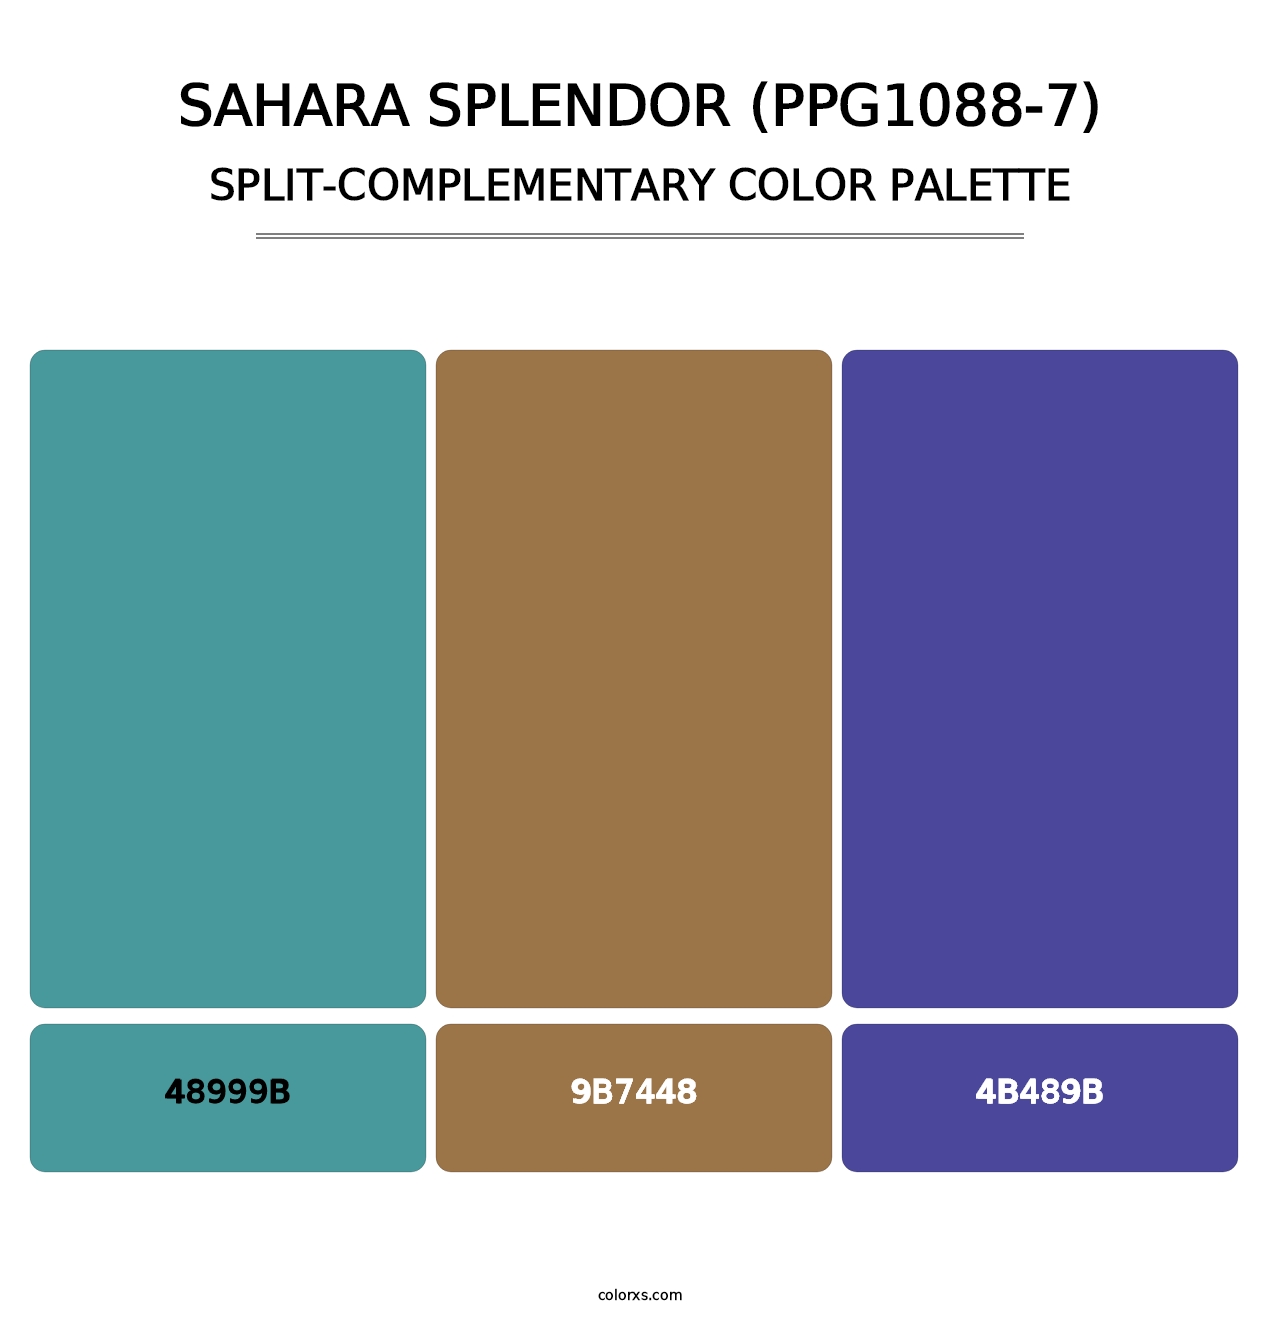 Sahara Splendor (PPG1088-7) - Split-Complementary Color Palette